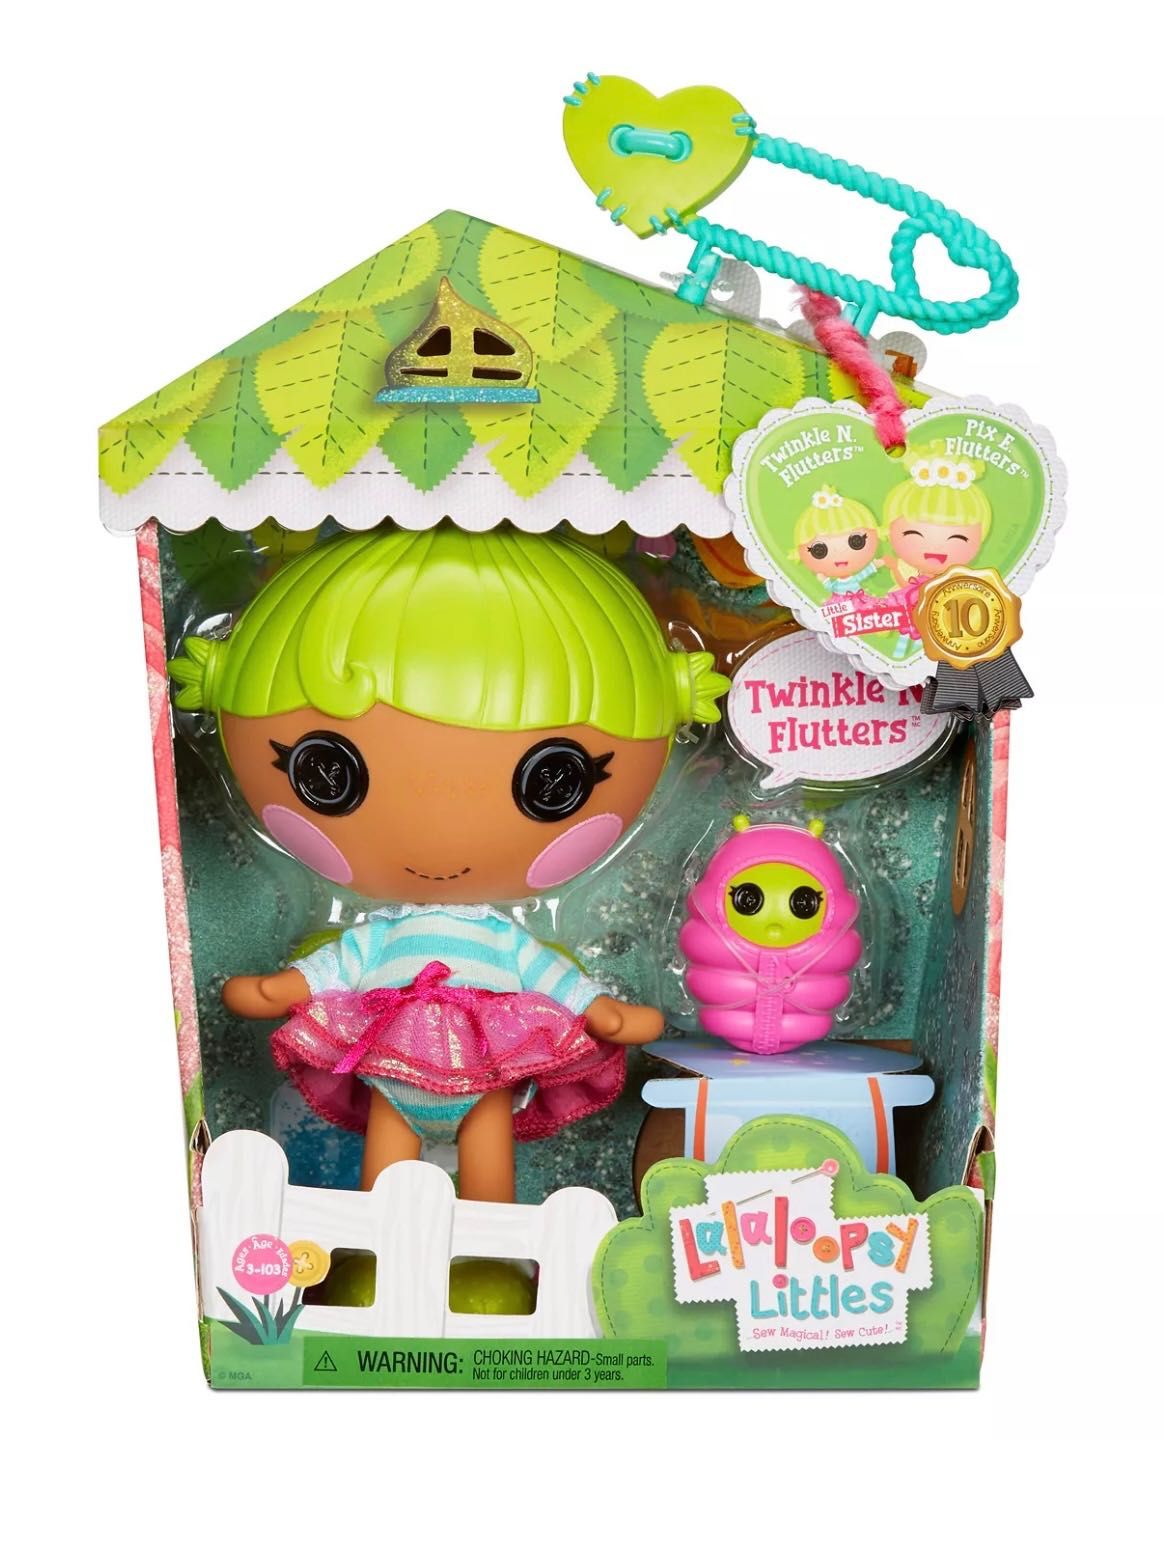 Лялька Lalaloopsy Littles Doll Twinkle N. Flutters